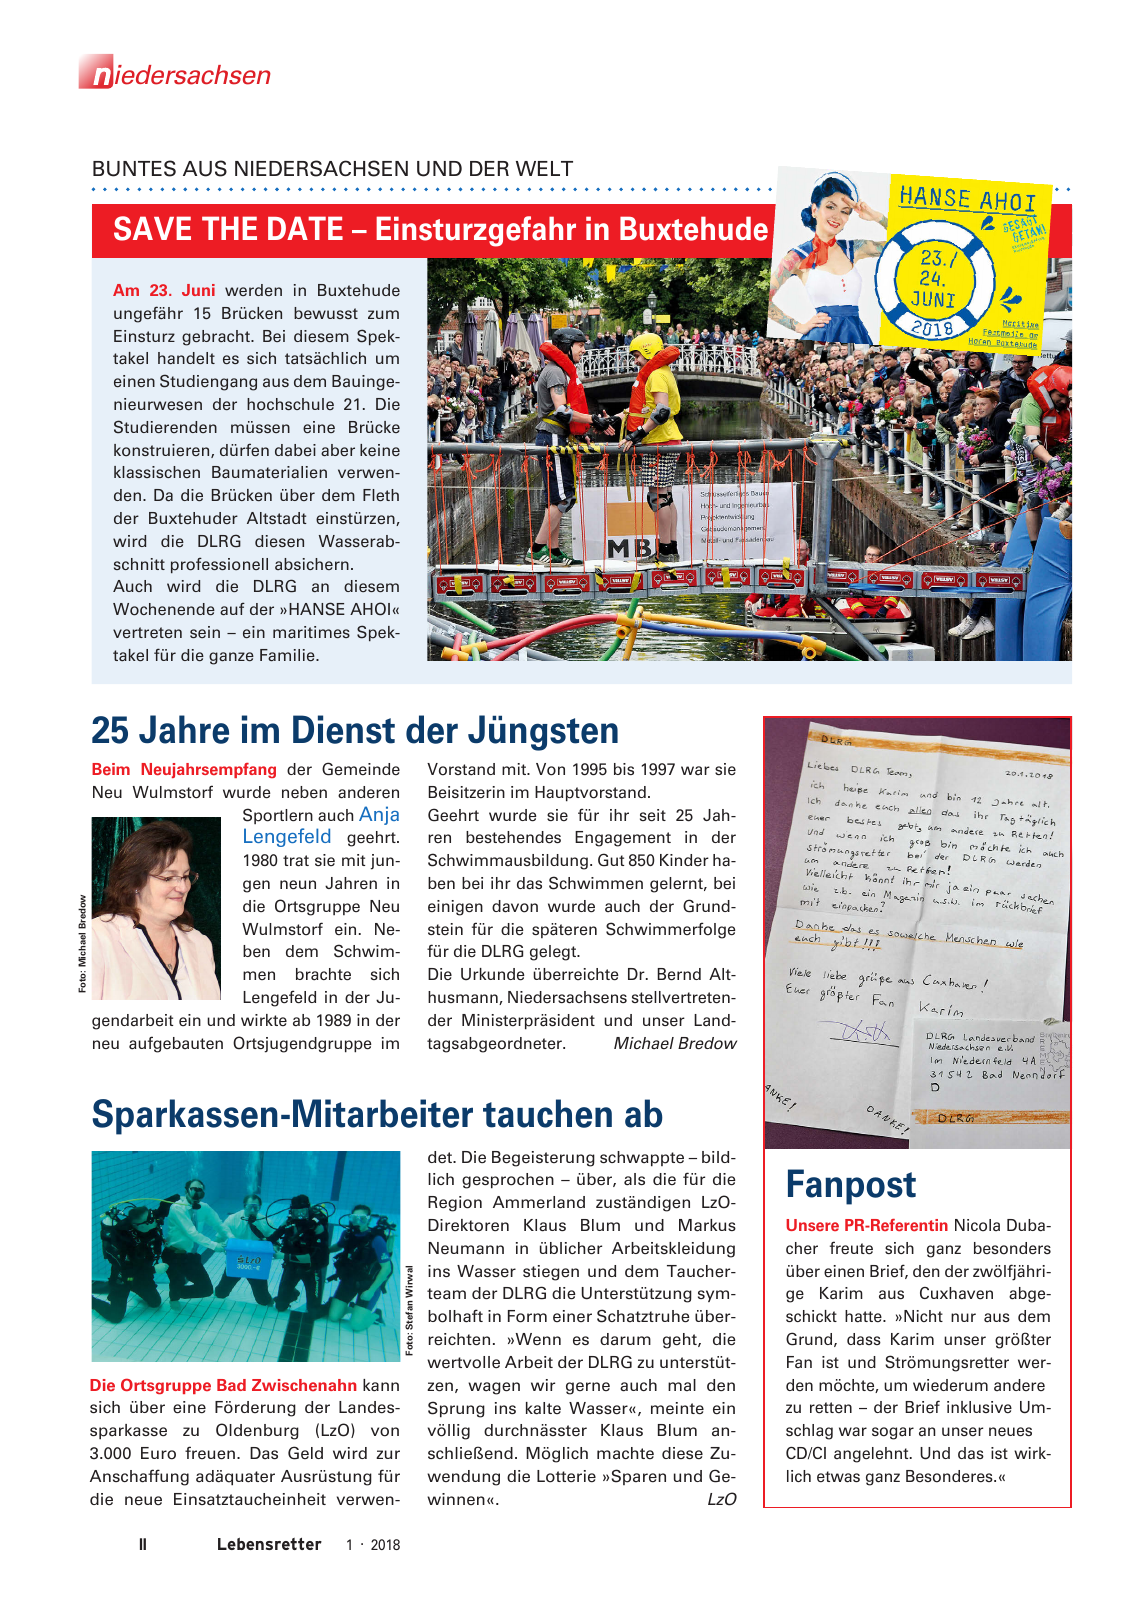 Vorschau Lebensretter 1/2018 - Regionalausgabe Niedersachsen Seite 4